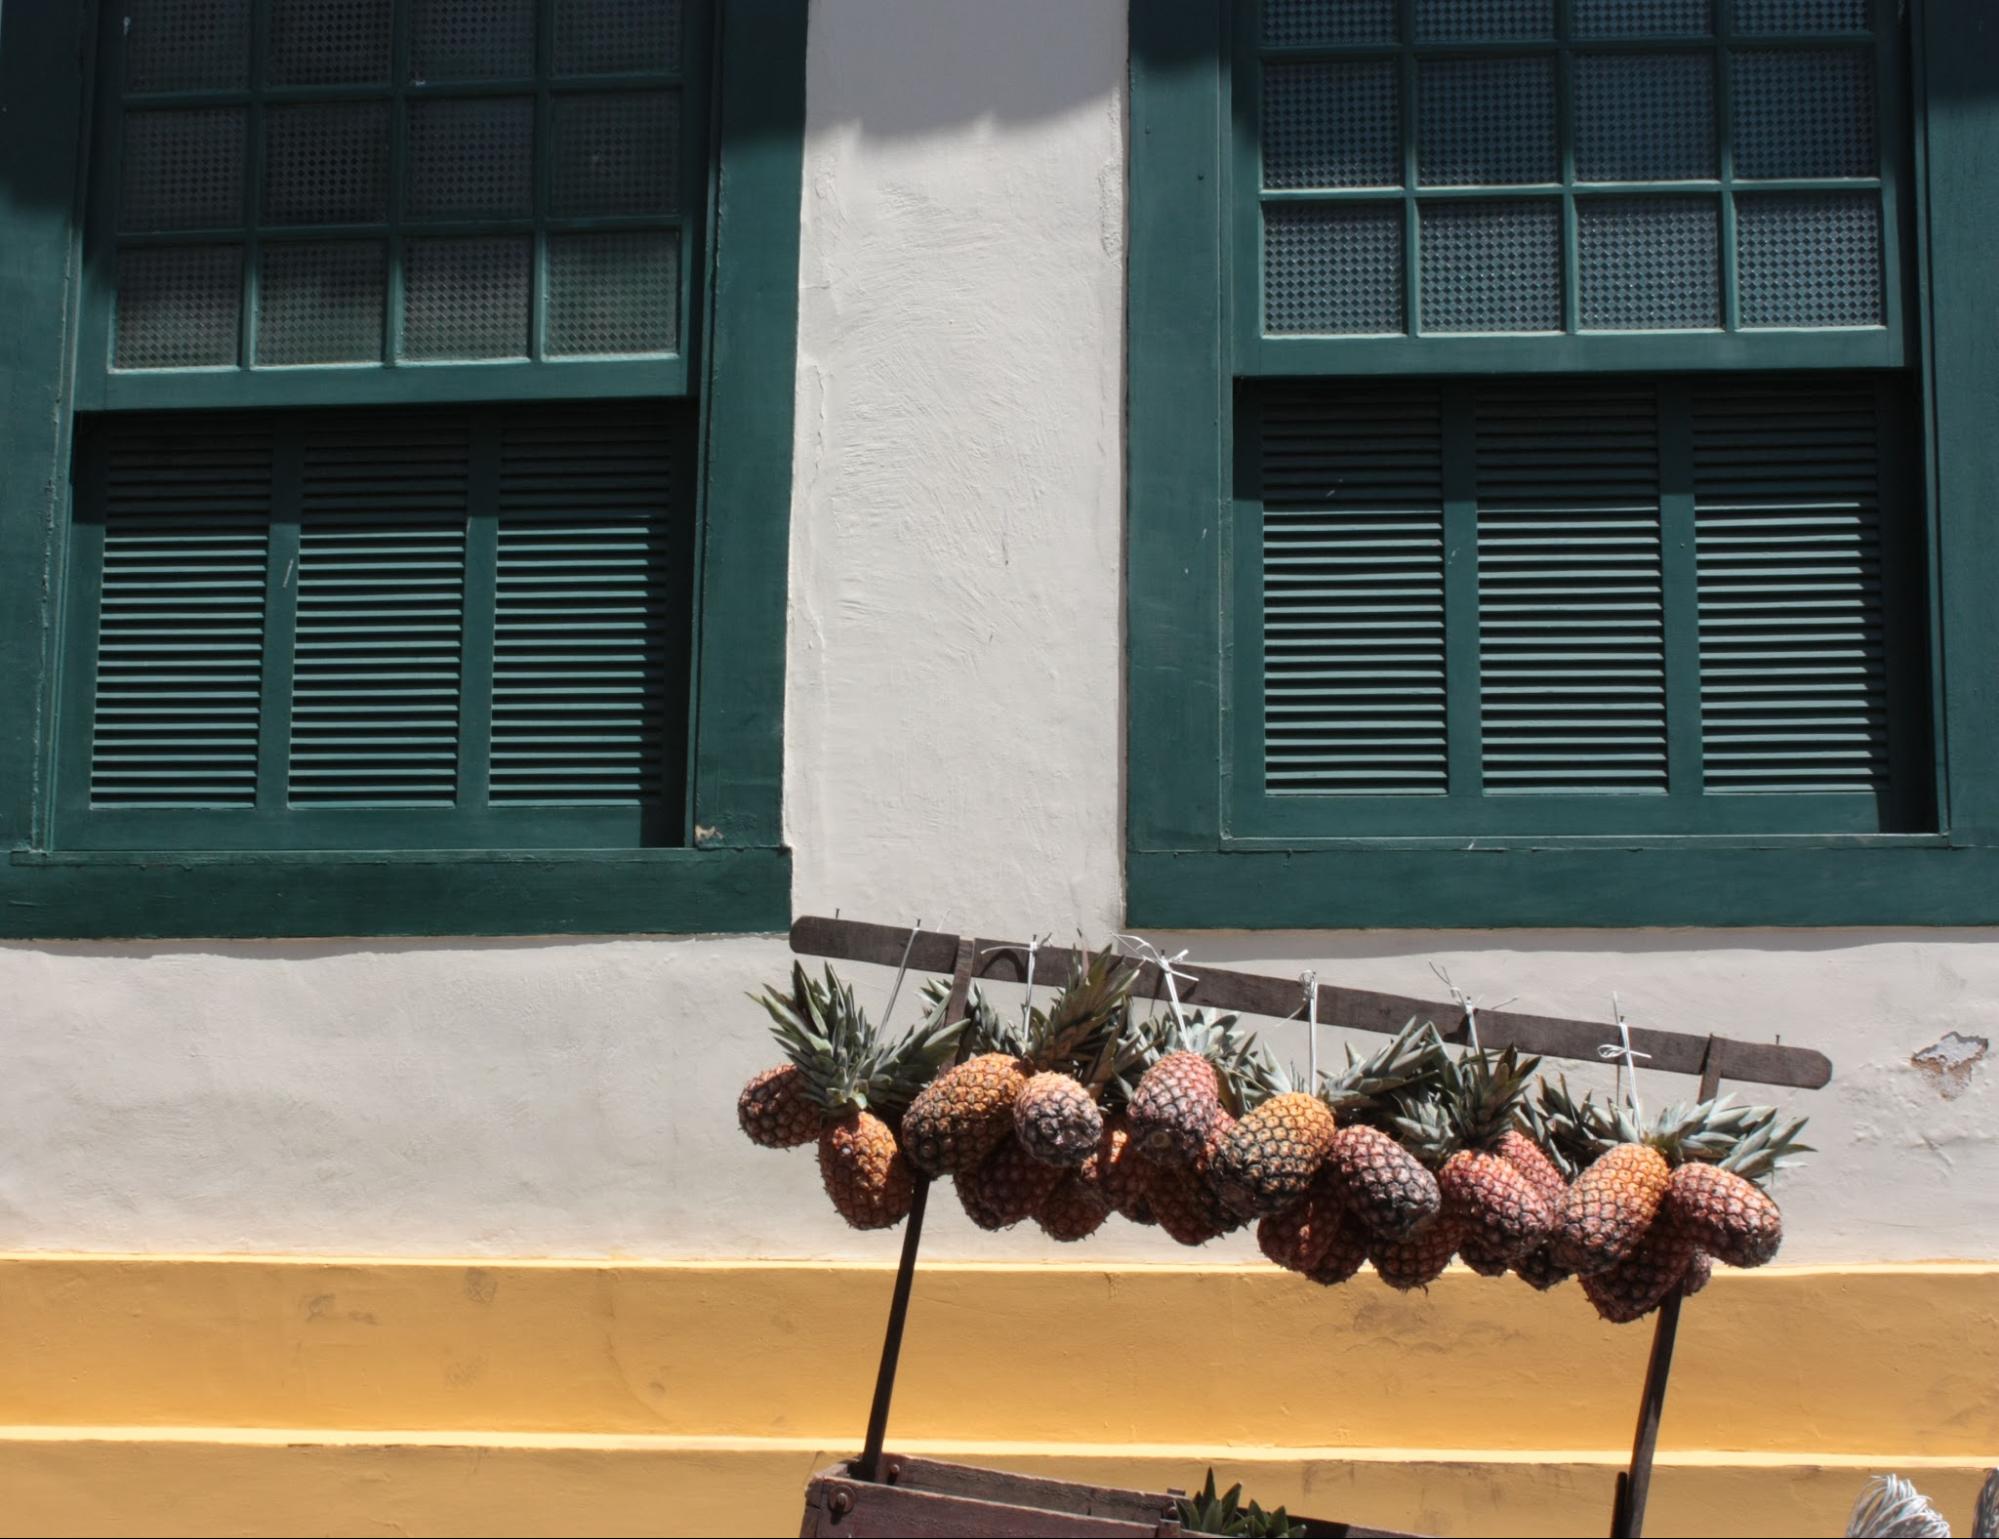 As cores da casa histórica e as cores do carrinho do vendedor de abacaxi se completam - Foto: Clara Rita